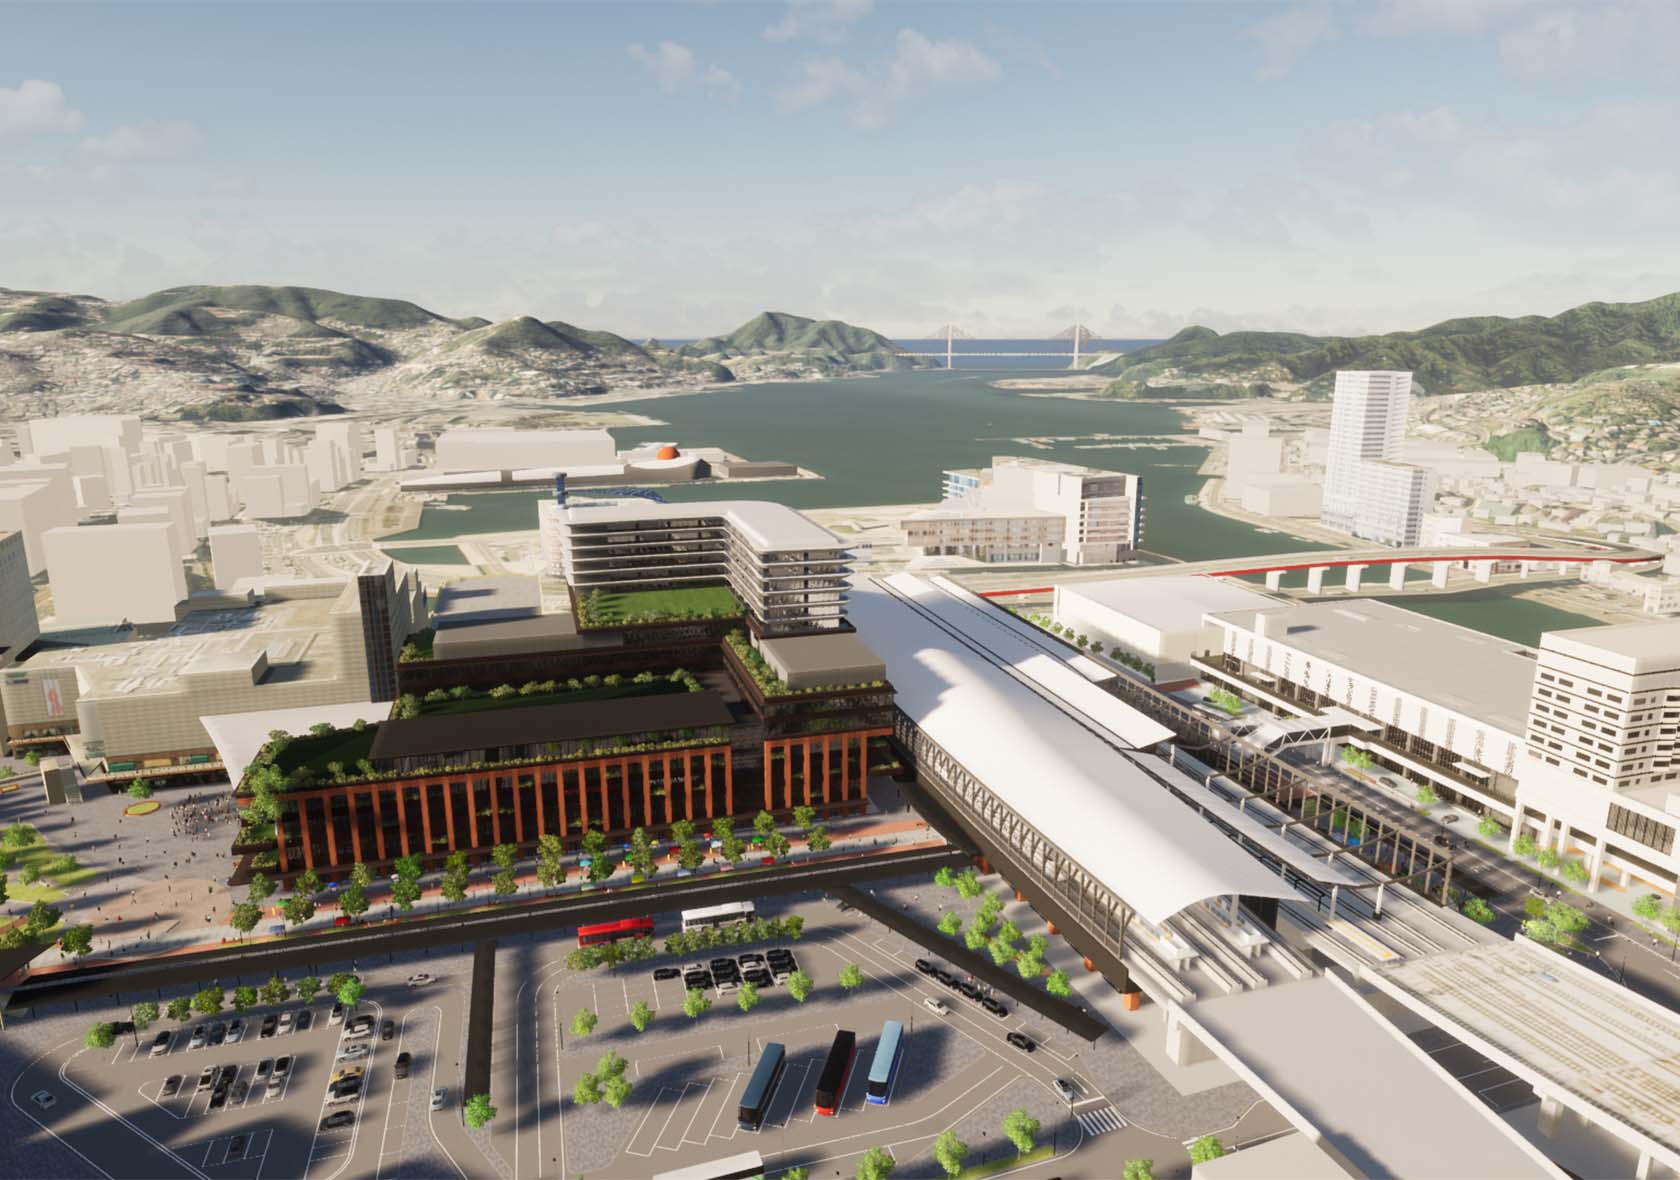 2021年11月1日に出島メッセ長崎、ヒルトン長崎がオープン。今後の計画では、2022年秋にはの西九州新幹線（長崎〜武雄温泉間）開業予定。に合わせて、出島メッセ長崎、ヒルトン長崎がオープン。その後、2023年春秋には長崎駅ビルも完成予定